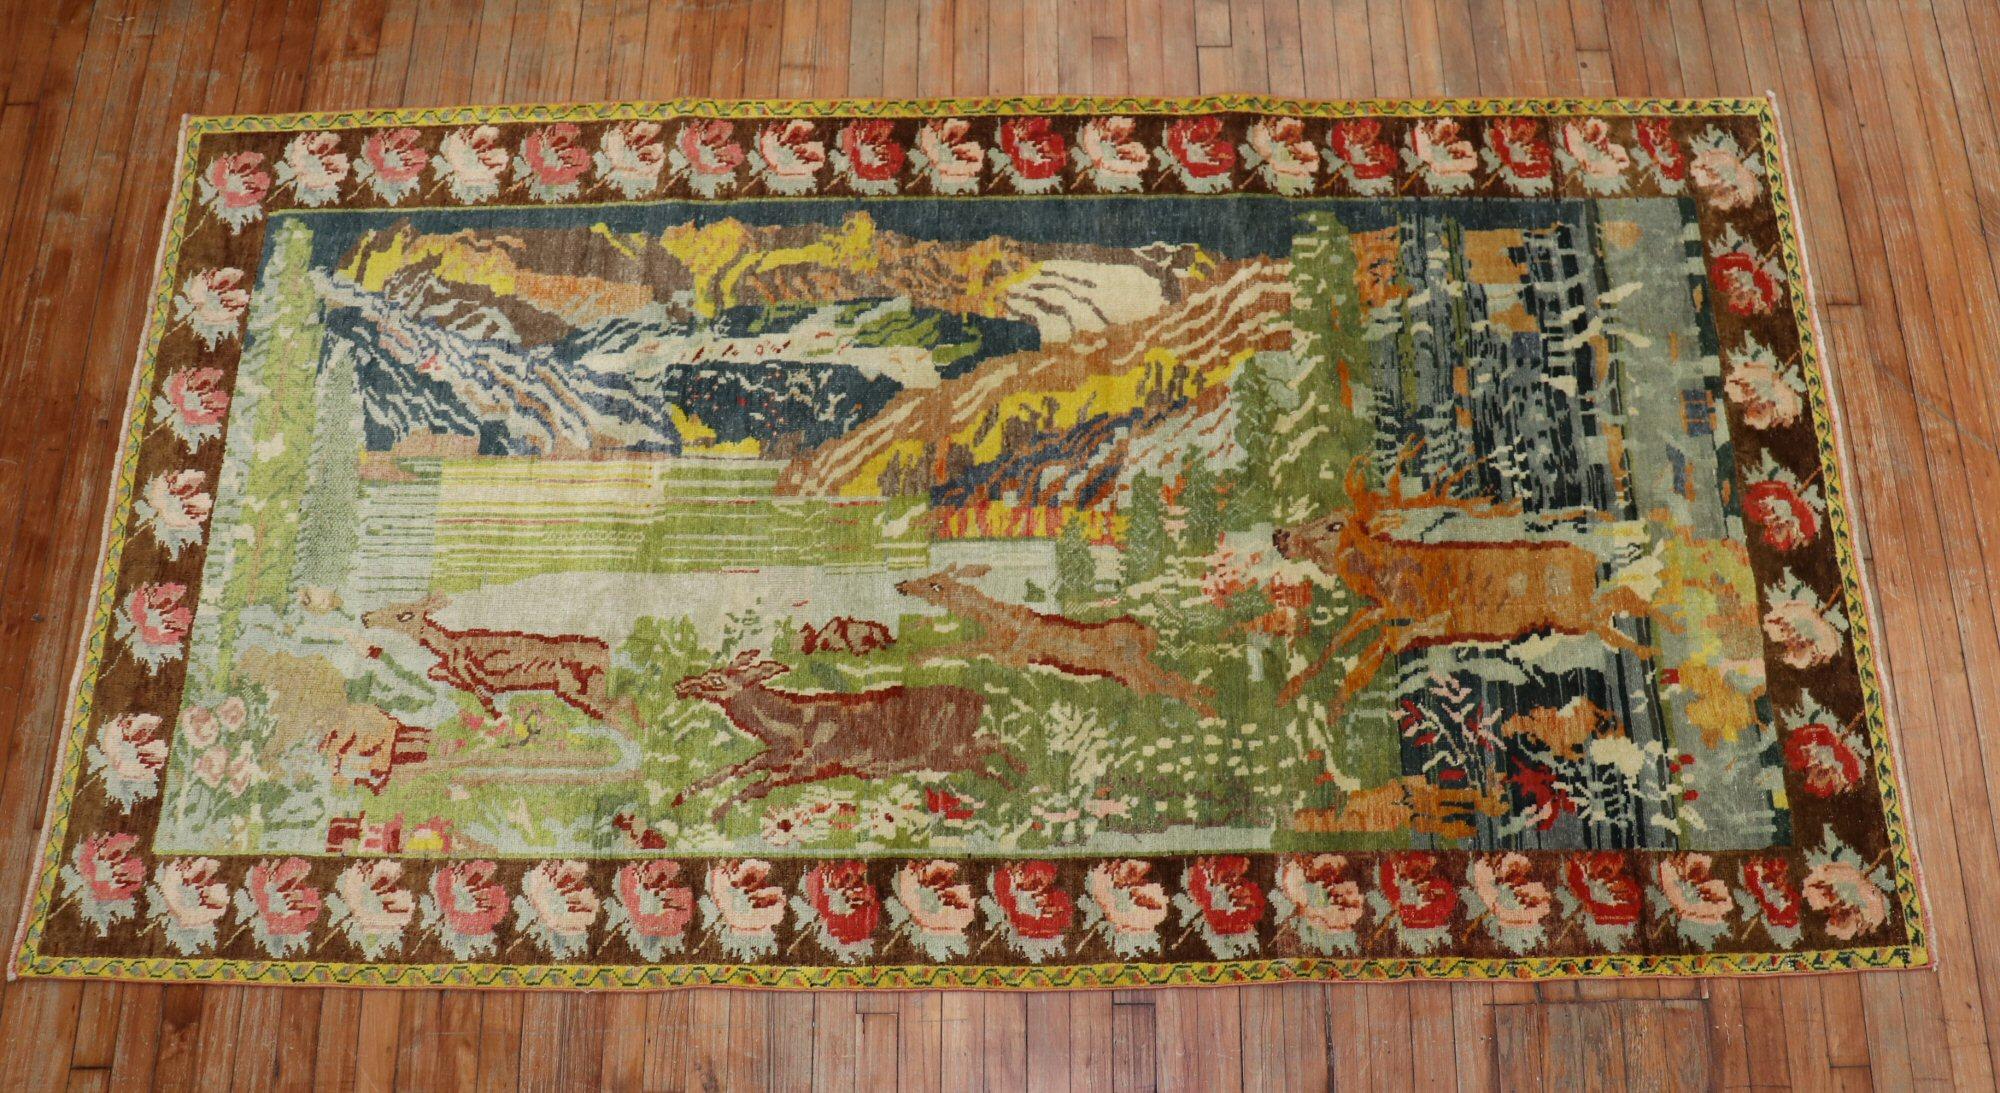 Schöner russischer Karabagh-Teppich aus der Mitte des 20. Jahrhunderts mit 4 laufenden Hirschen auf landschaftlichem Hintergrund und brauner Blumenbordüre.

Maße: 4'9